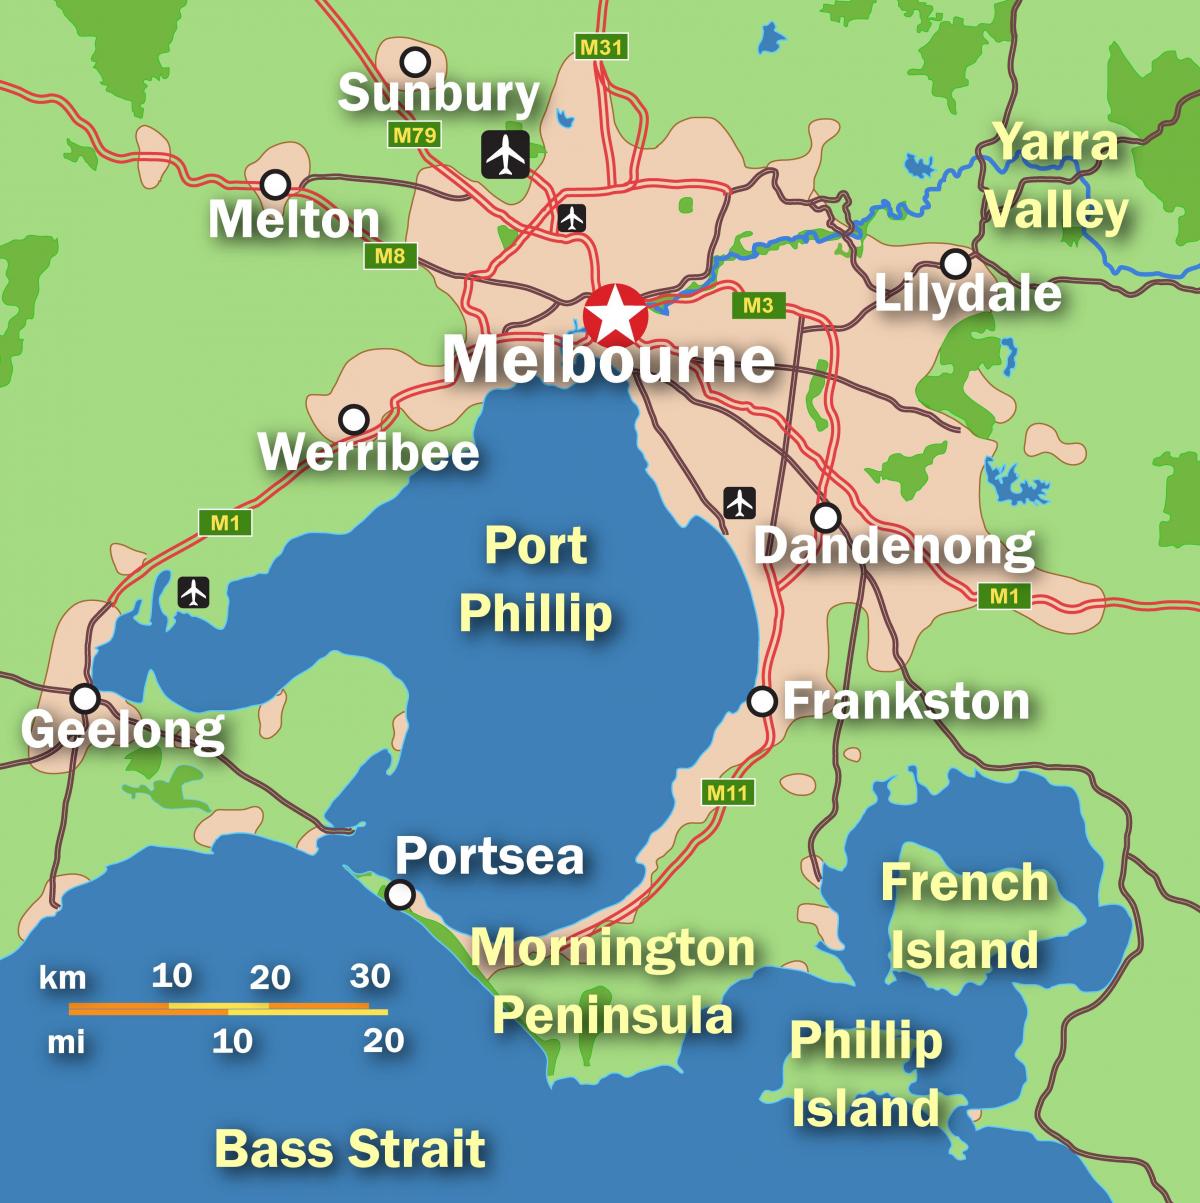 Mapa de la ciudad de Melbourne